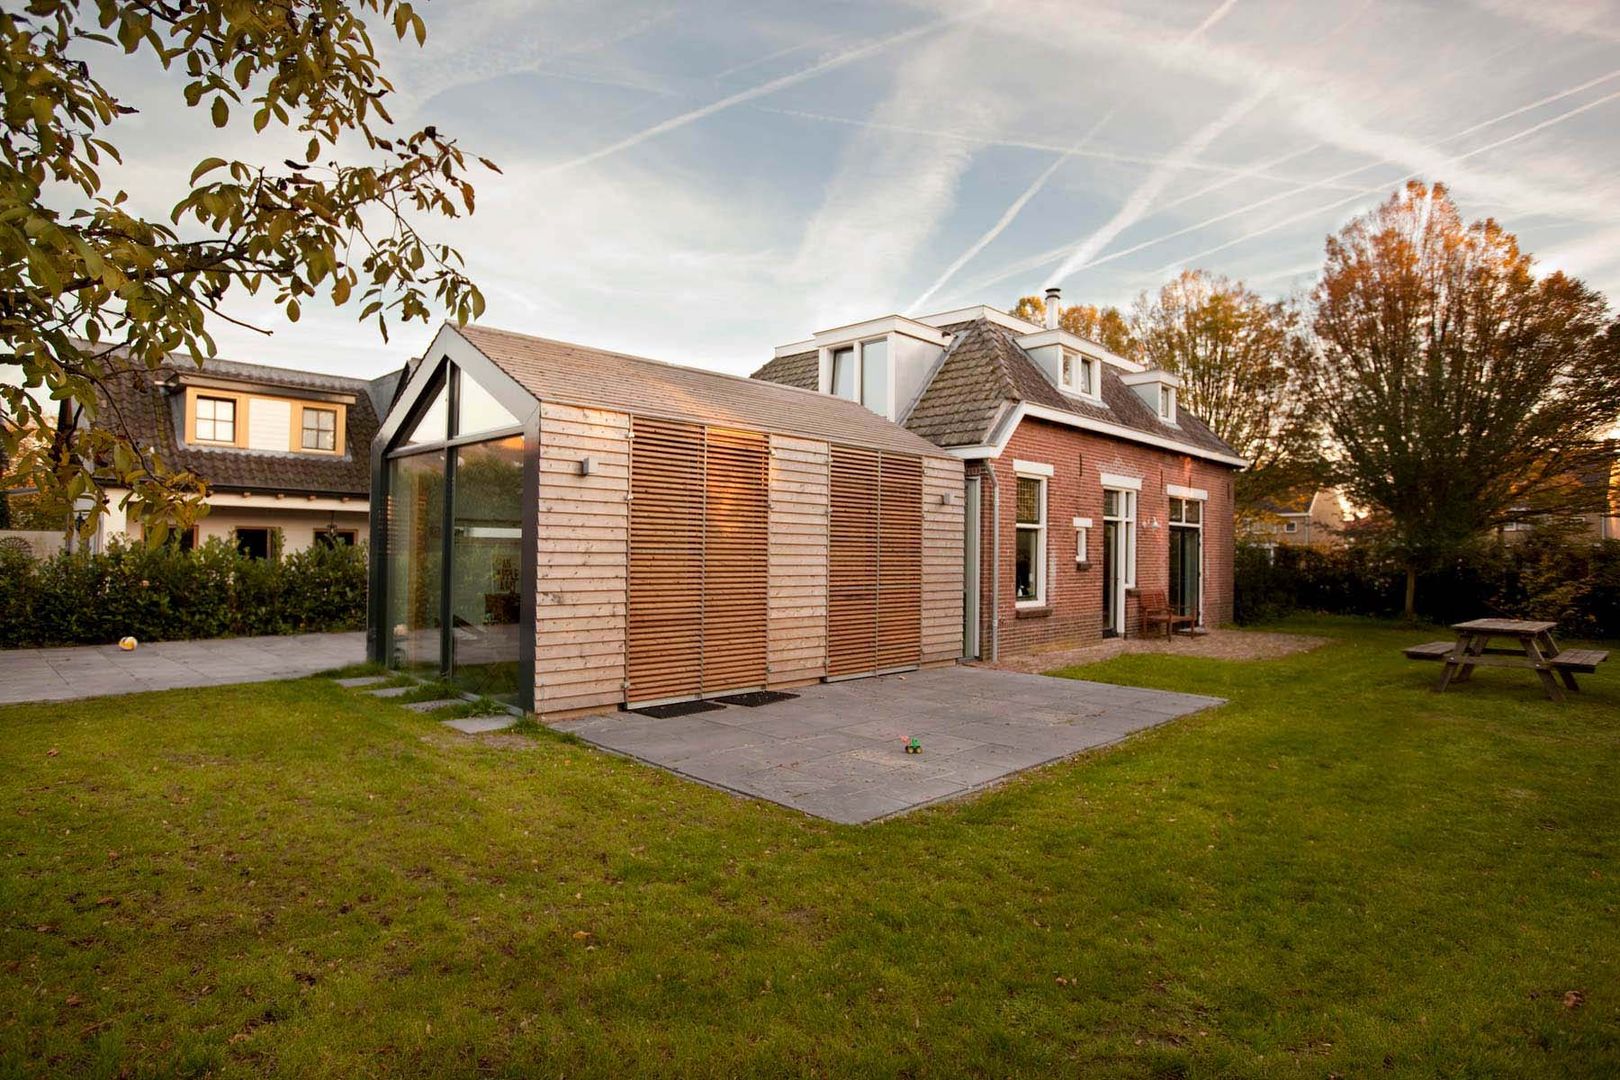 Woonhuis De Meern, RHAW architecture RHAW architecture Casas de estilo moderno